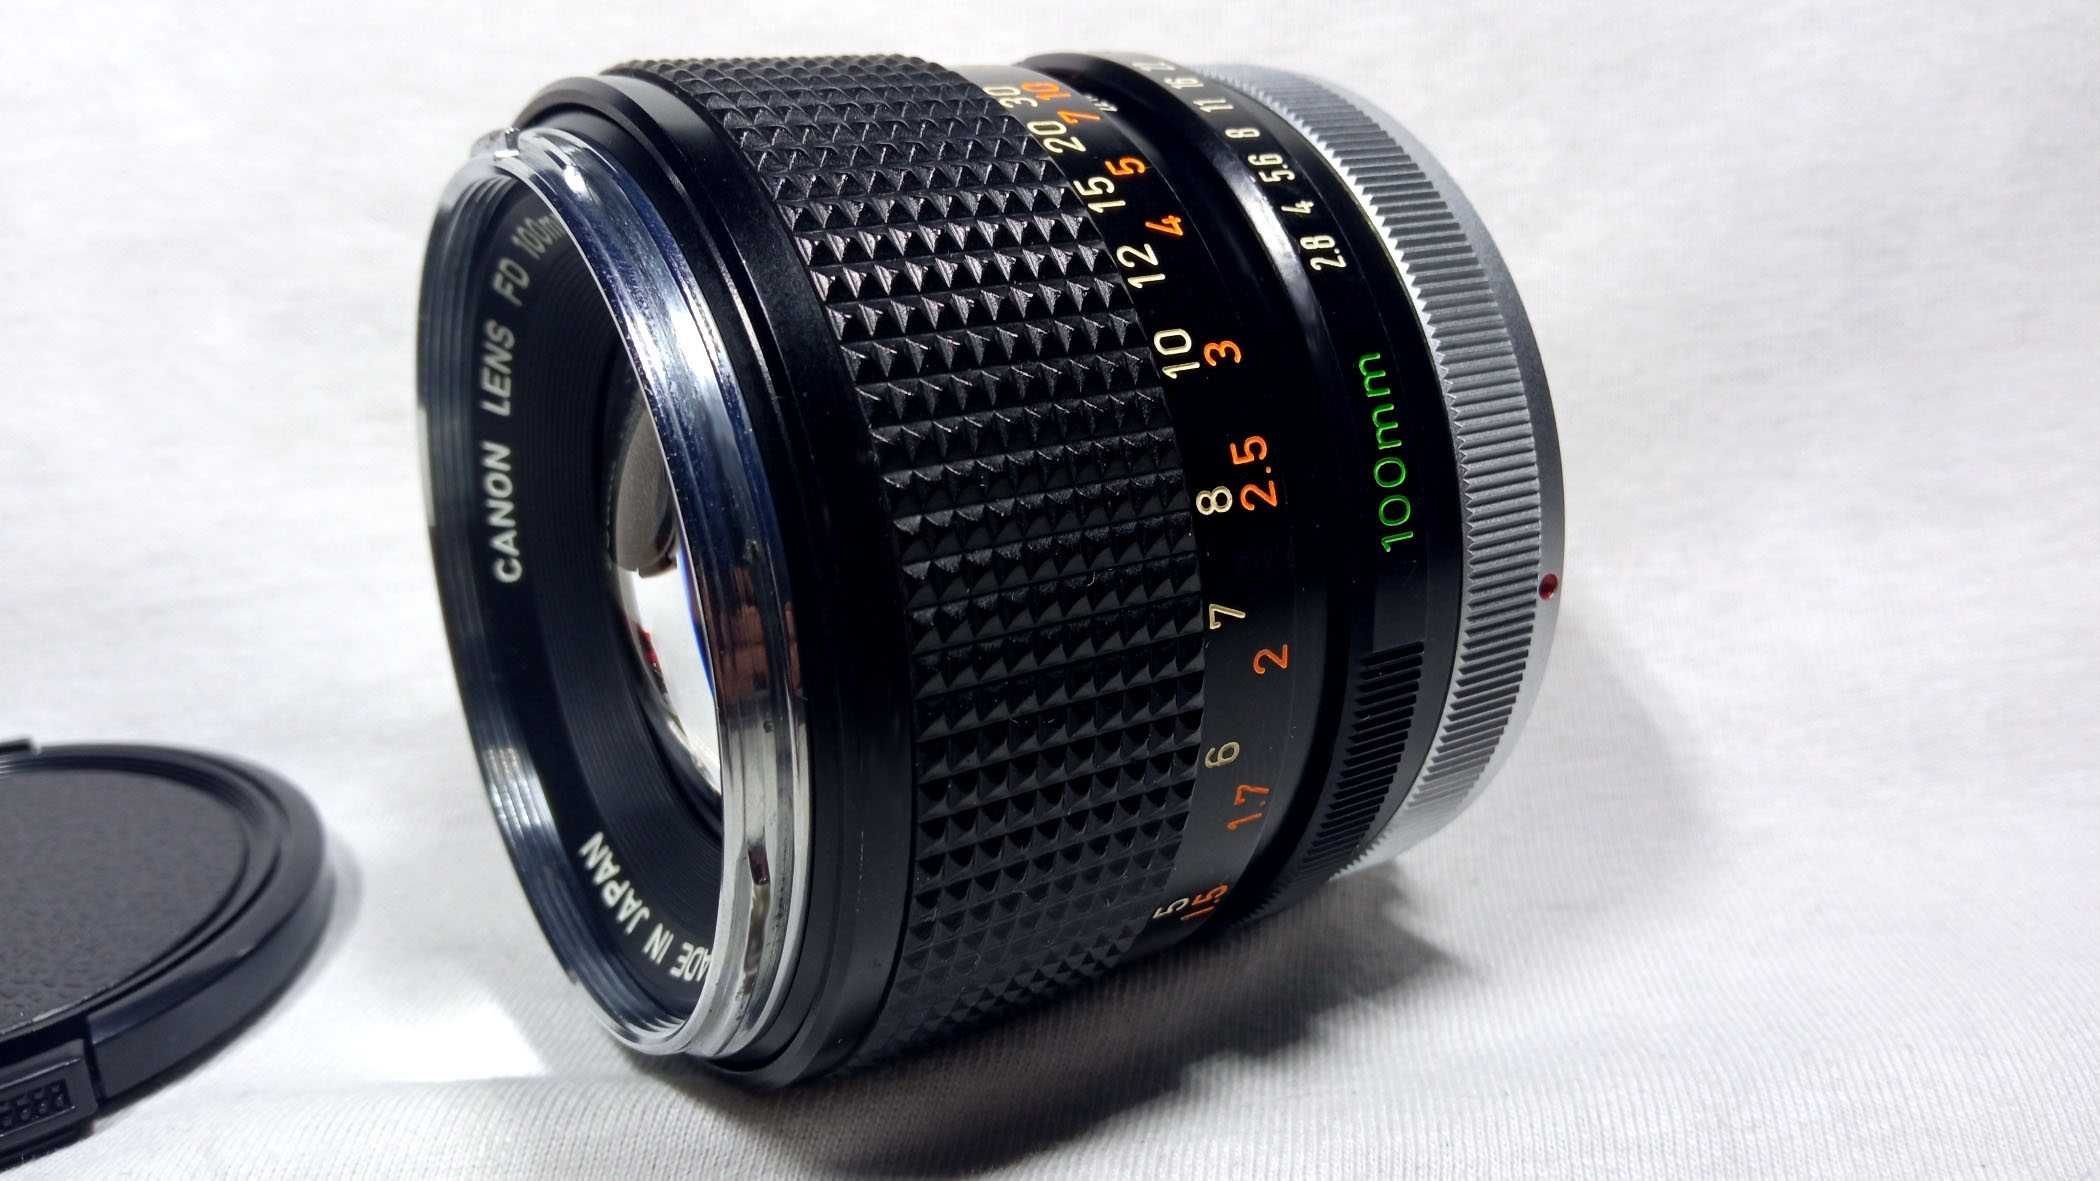 Мануальный объектив Canon FD 100mm 2.8 chrome nose